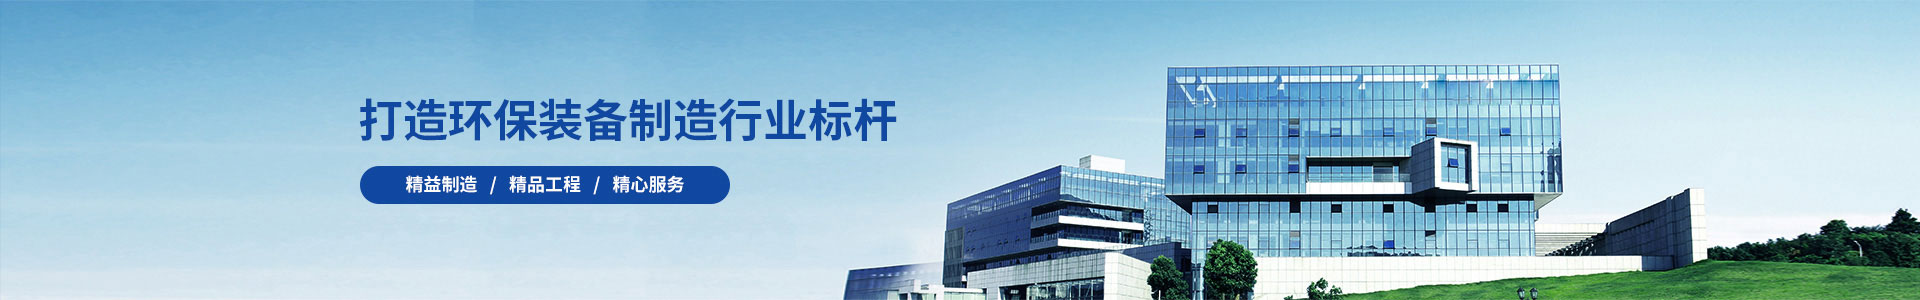 江西瑞林装备有限公司废酸玻璃钢设备合同签订-新闻动态-江苏长源环保设备有限公司